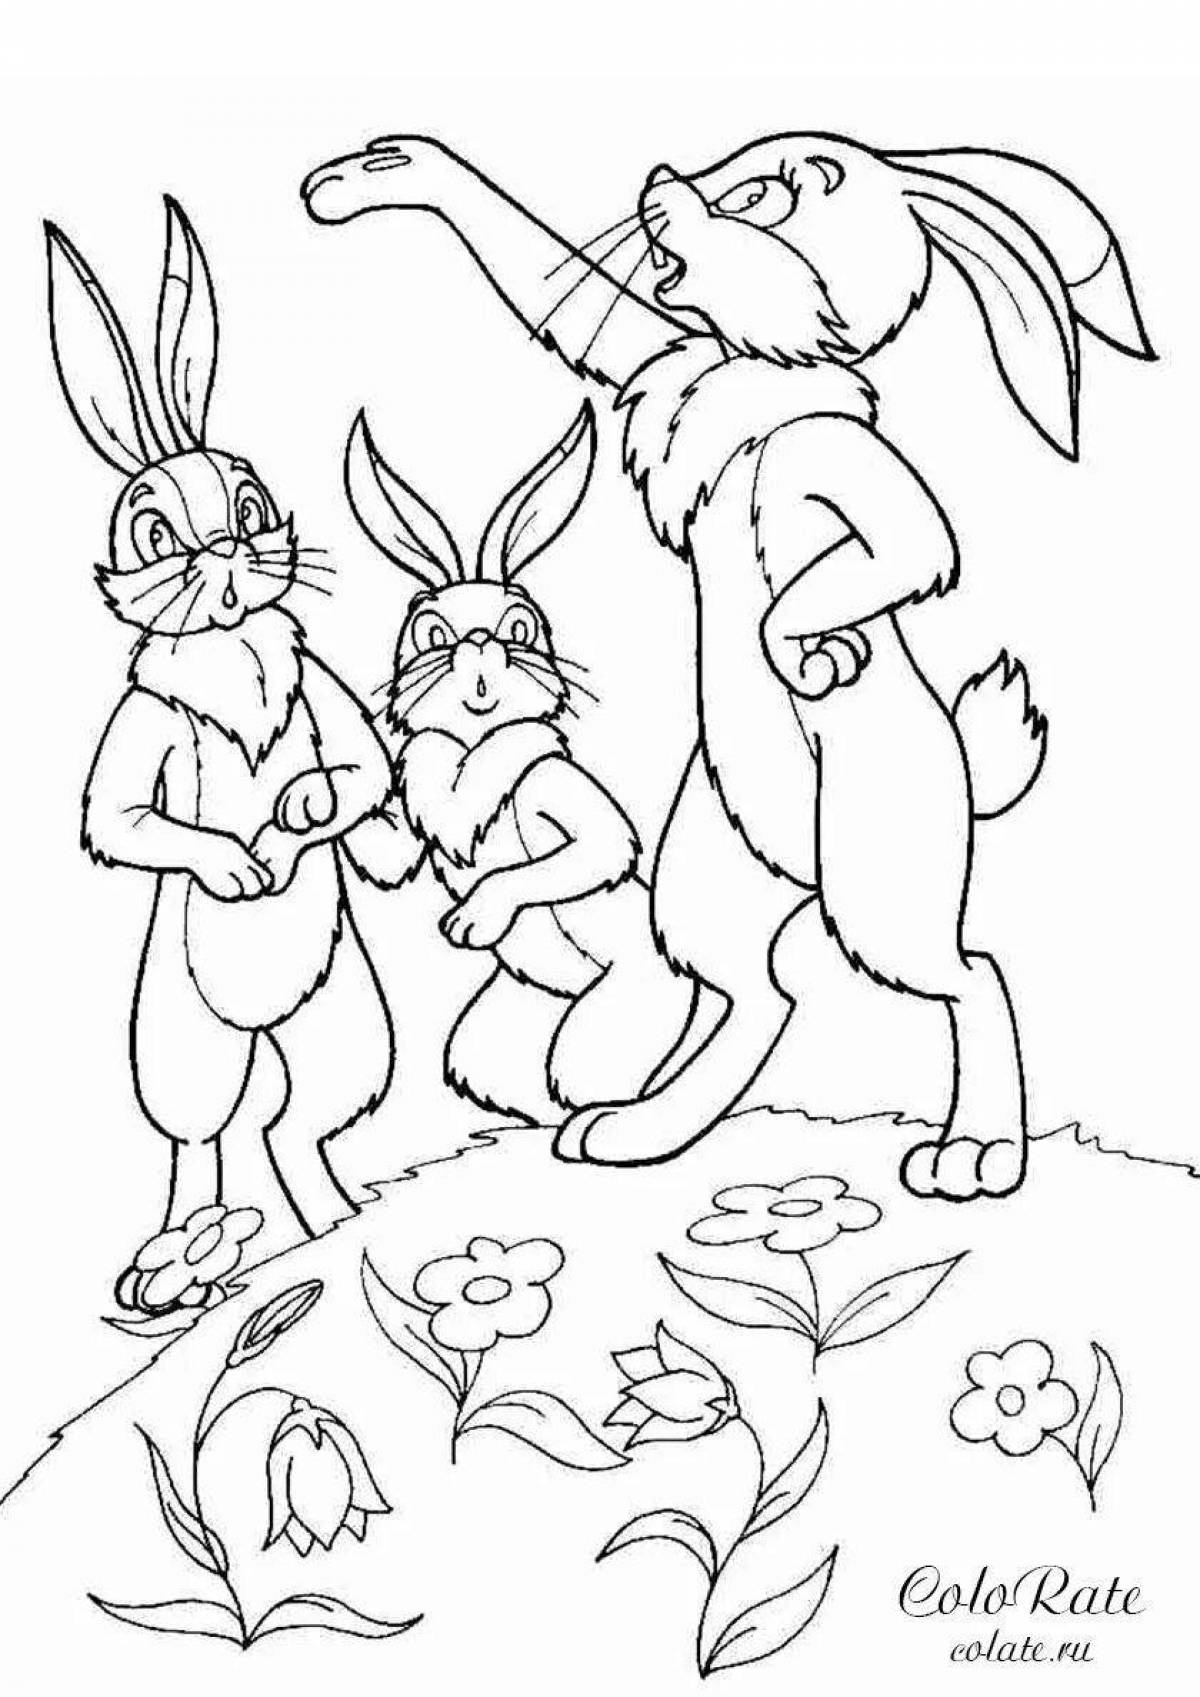 Картинки зайцев для срисовки (40 картинок)